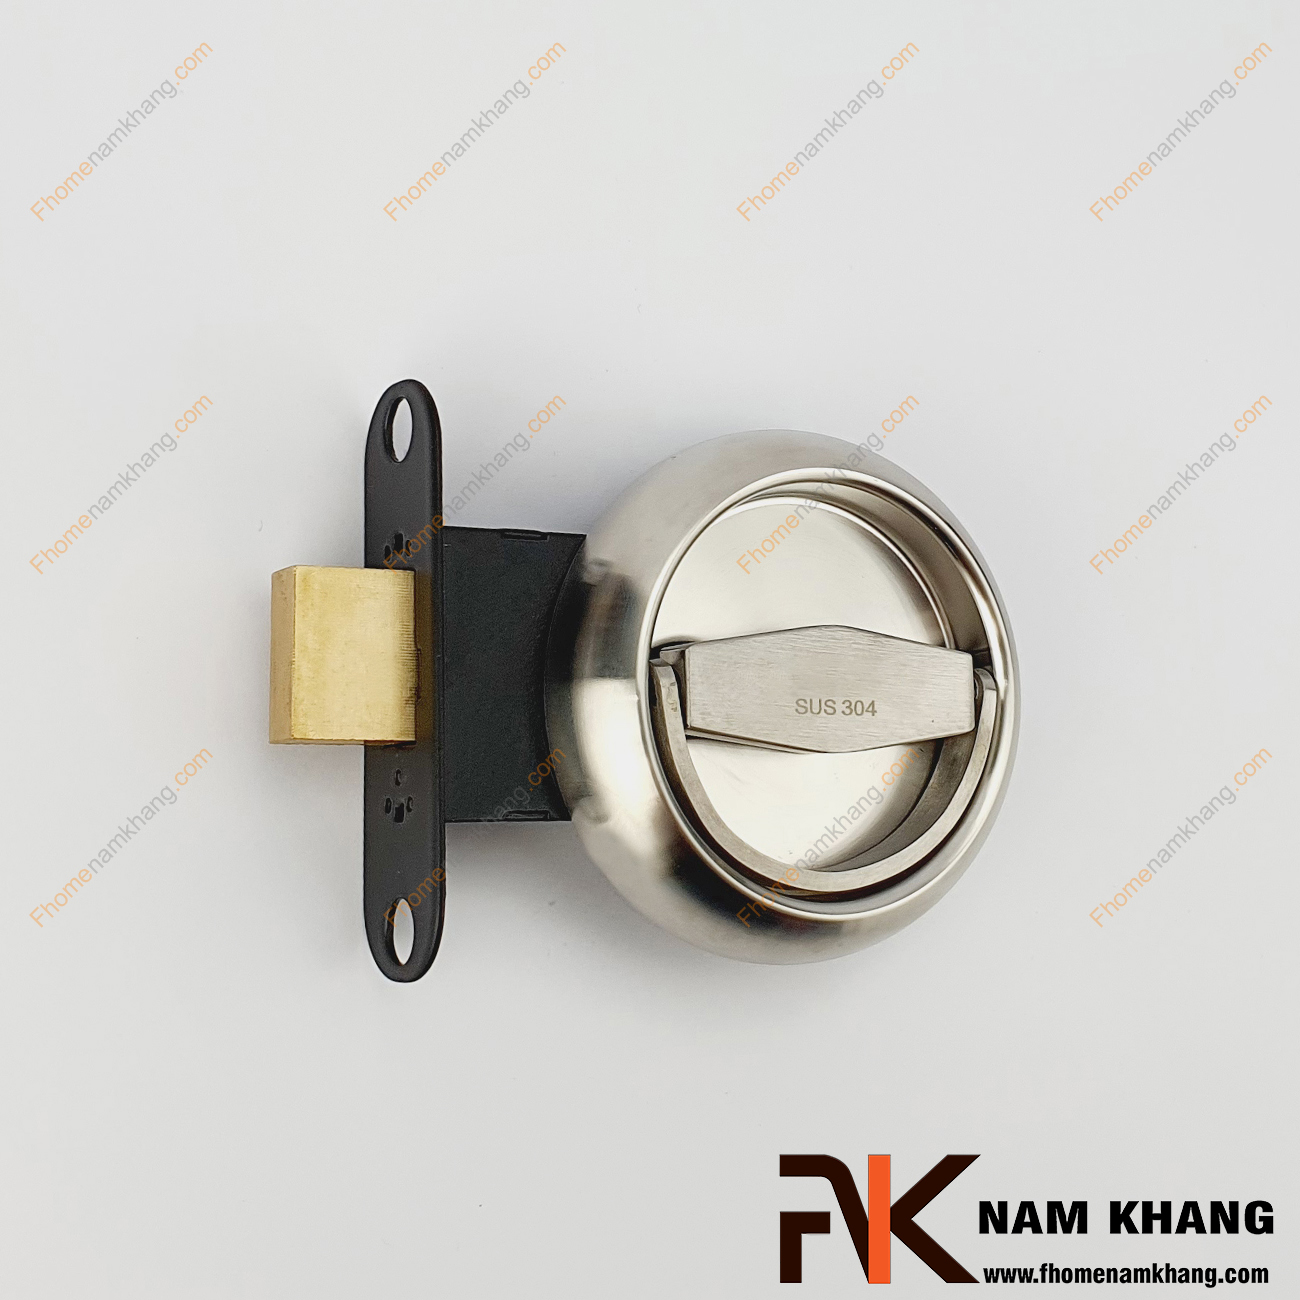 Khóa âm cửa mở dạng tròn bằng inox NK567H-GX-D là dạng dành cho các dạng cửa mở thông thường. Sản phẩm khóa này chỉ bao gồm phần hộp chốt và tay vặn để lắp đặt trong những không gian không sử dụng khóa chìa thông dụng.